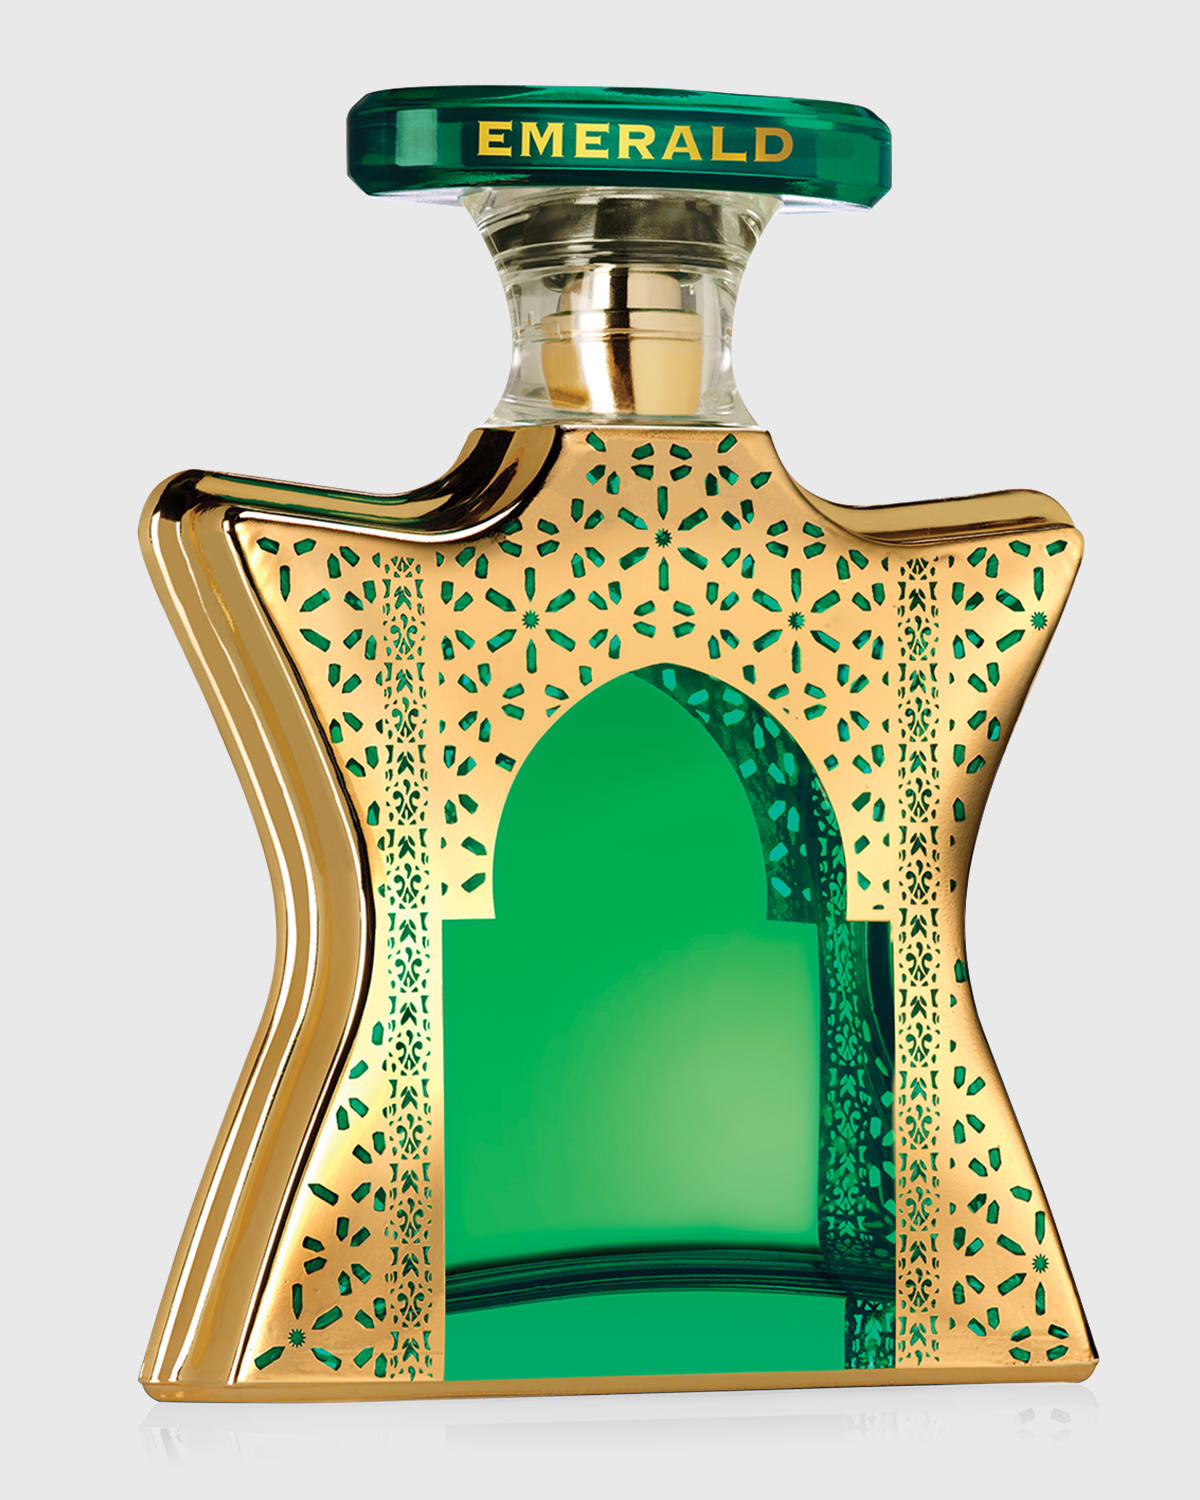 Dubai Emerald Eau de Parfum, 3.4 oz.